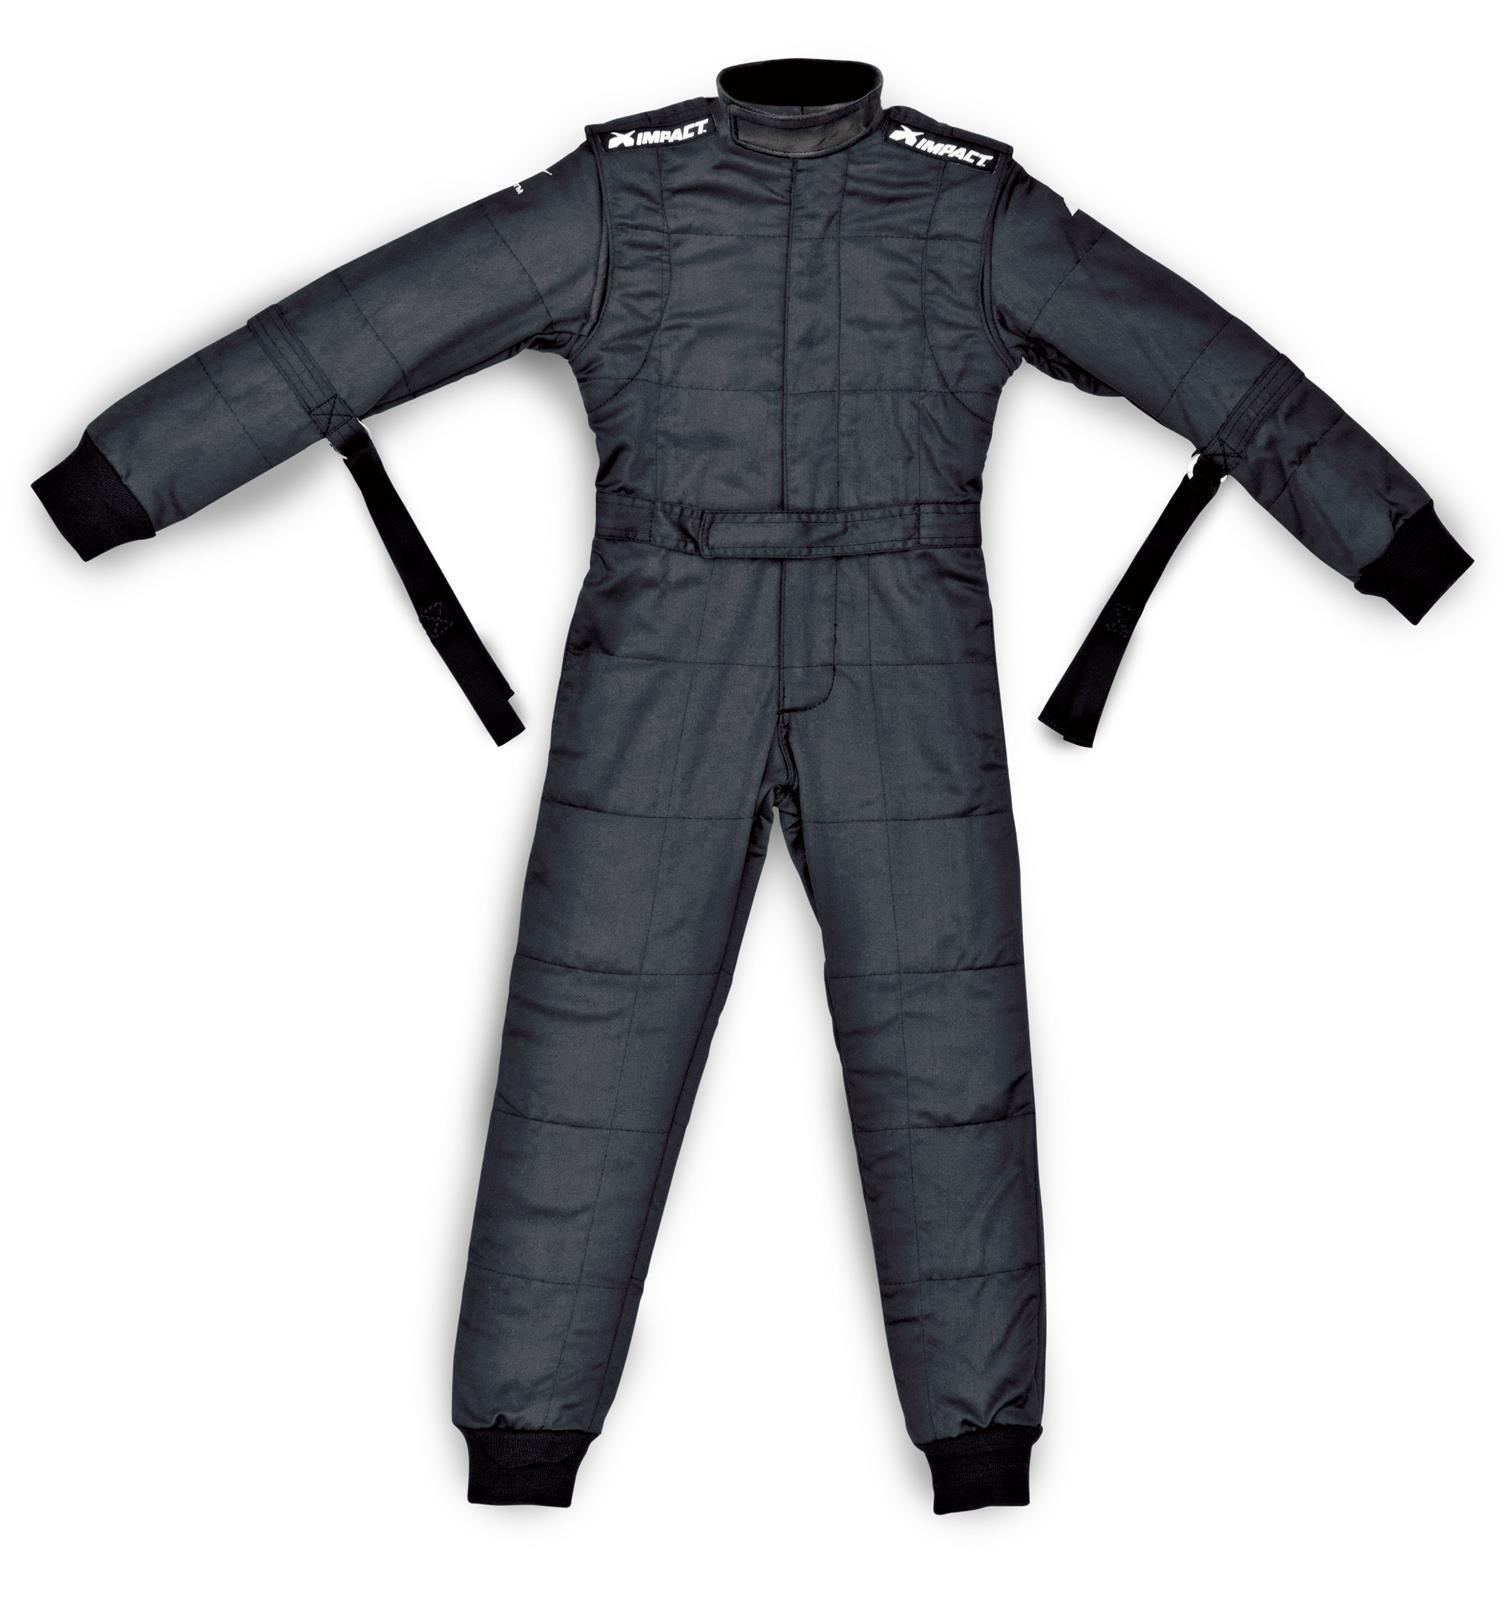 Suit D/L Mini Racer 1 pc X-Large Black - Burlile Performance Products